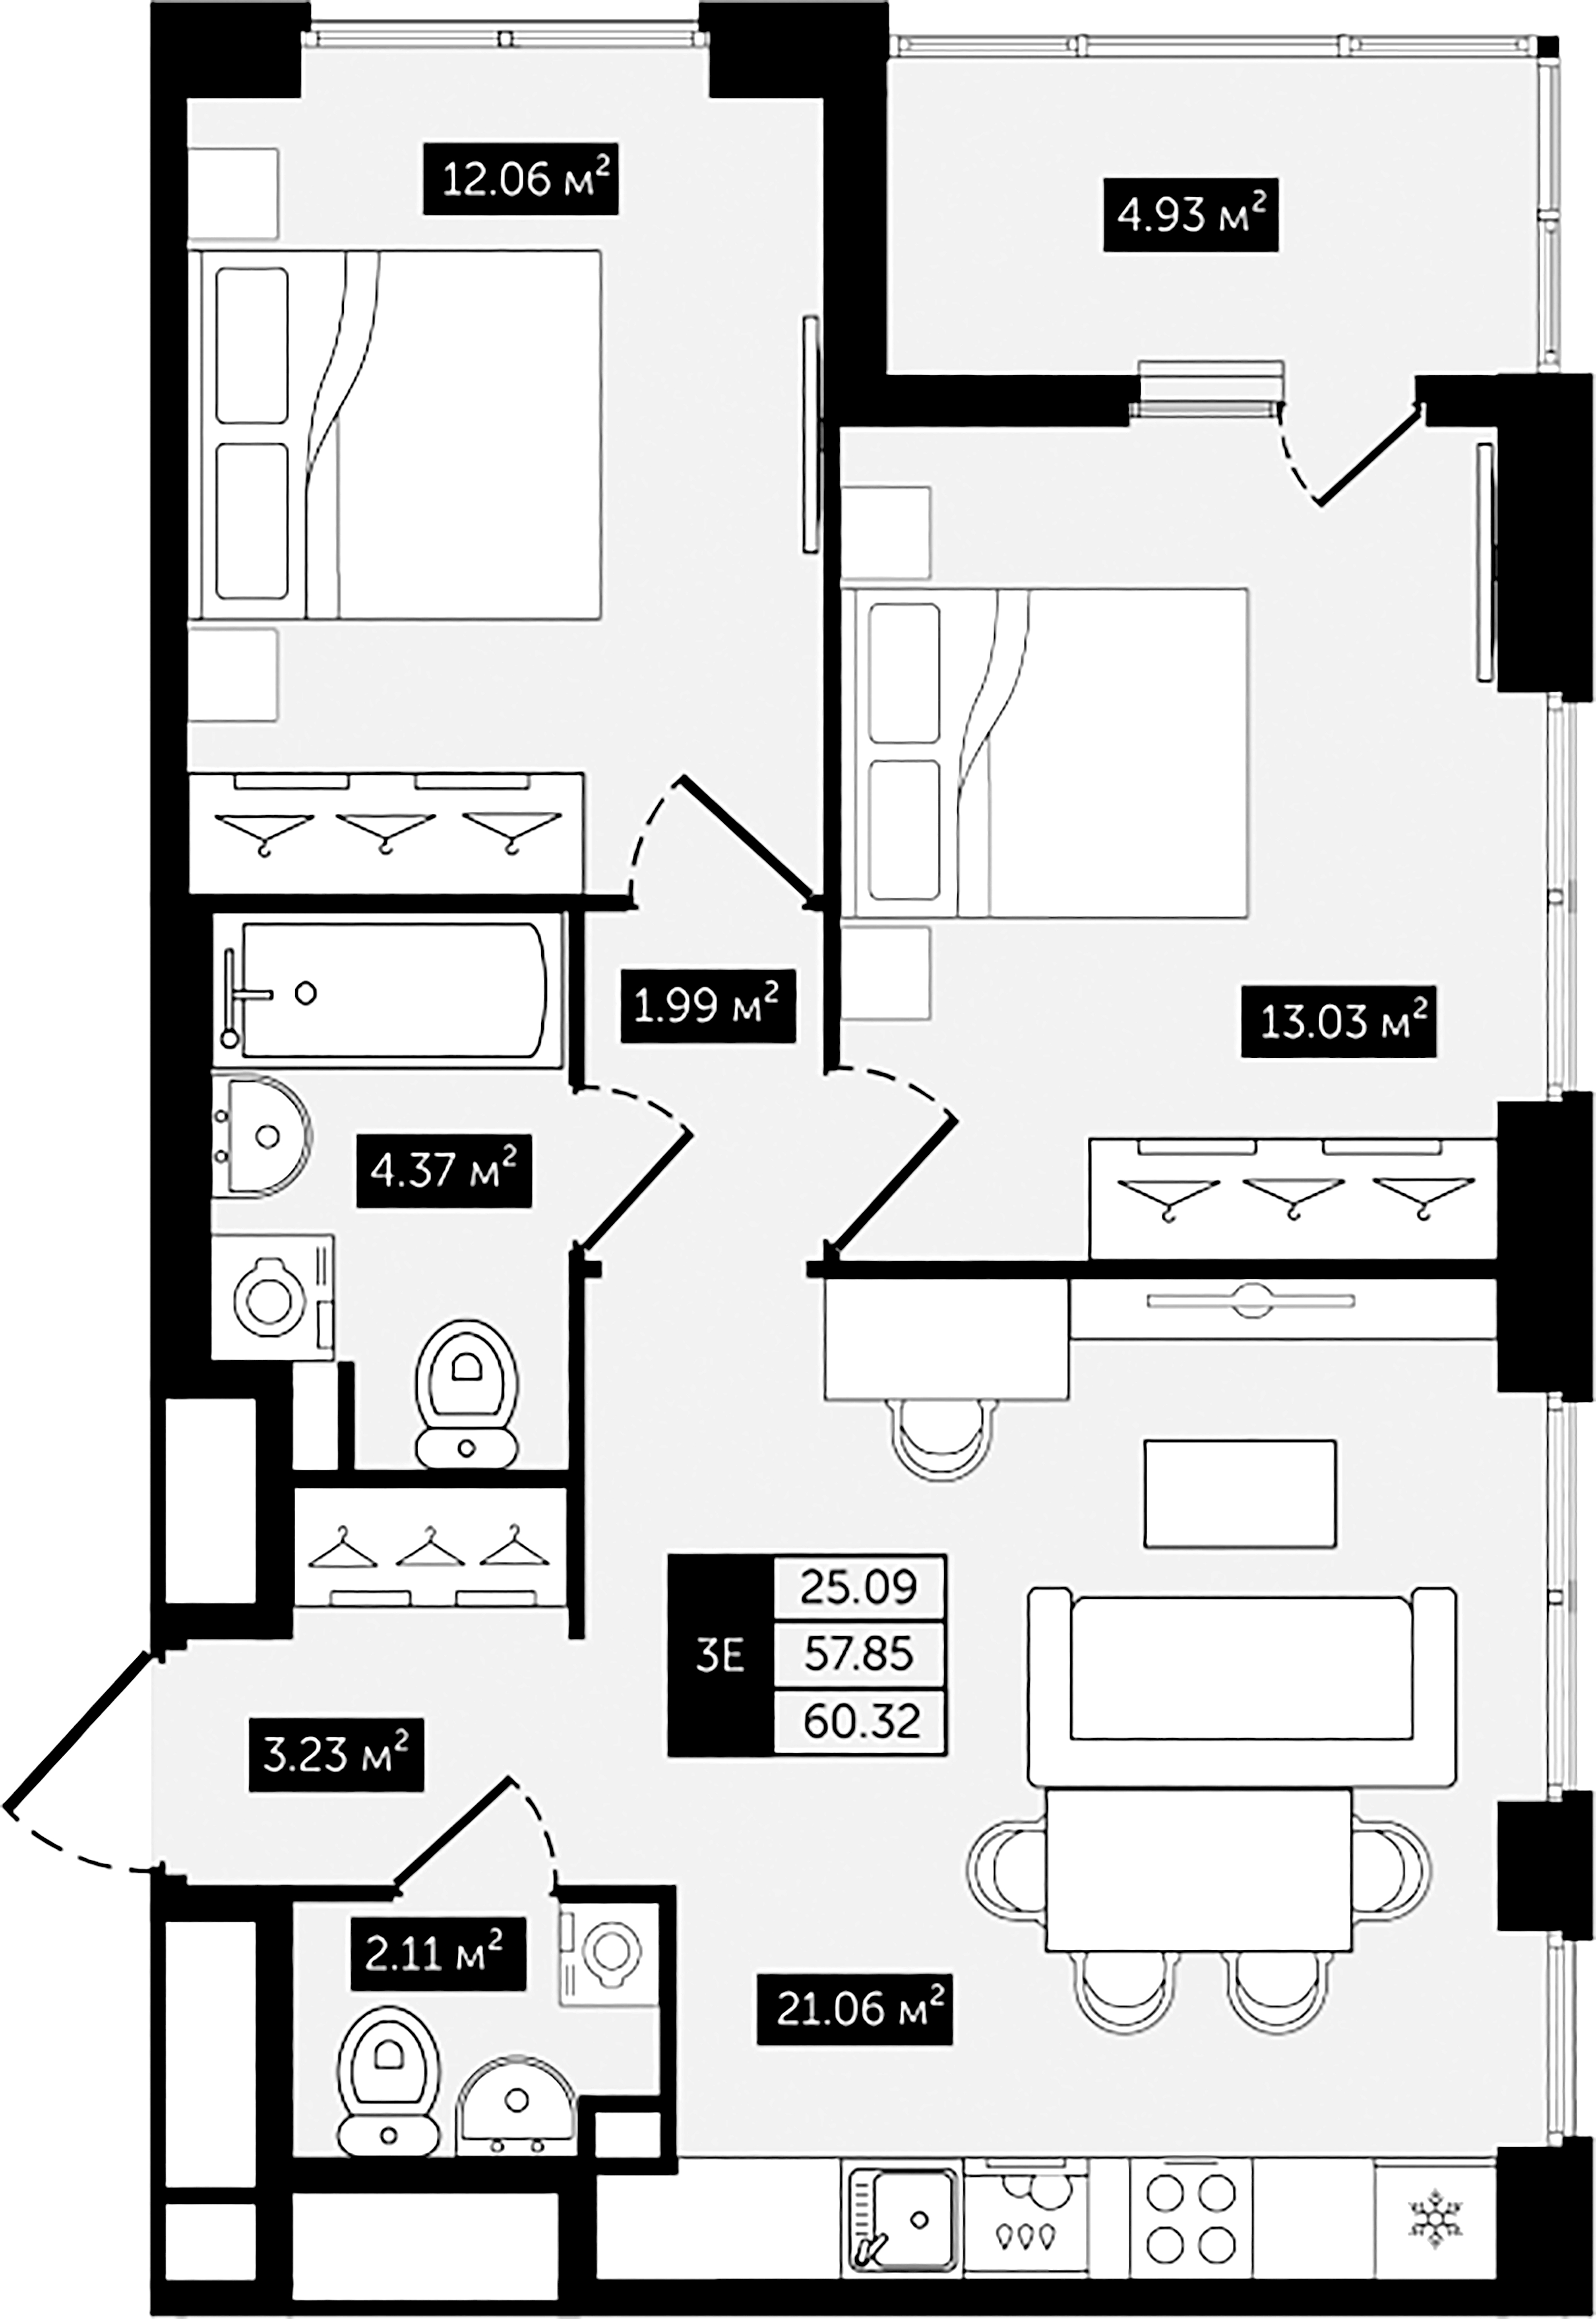 2-комнатная квартира №8 в: Клубный дом №8: 60.32 м²; этаж: 2 - купить в Санкт-Петербурге